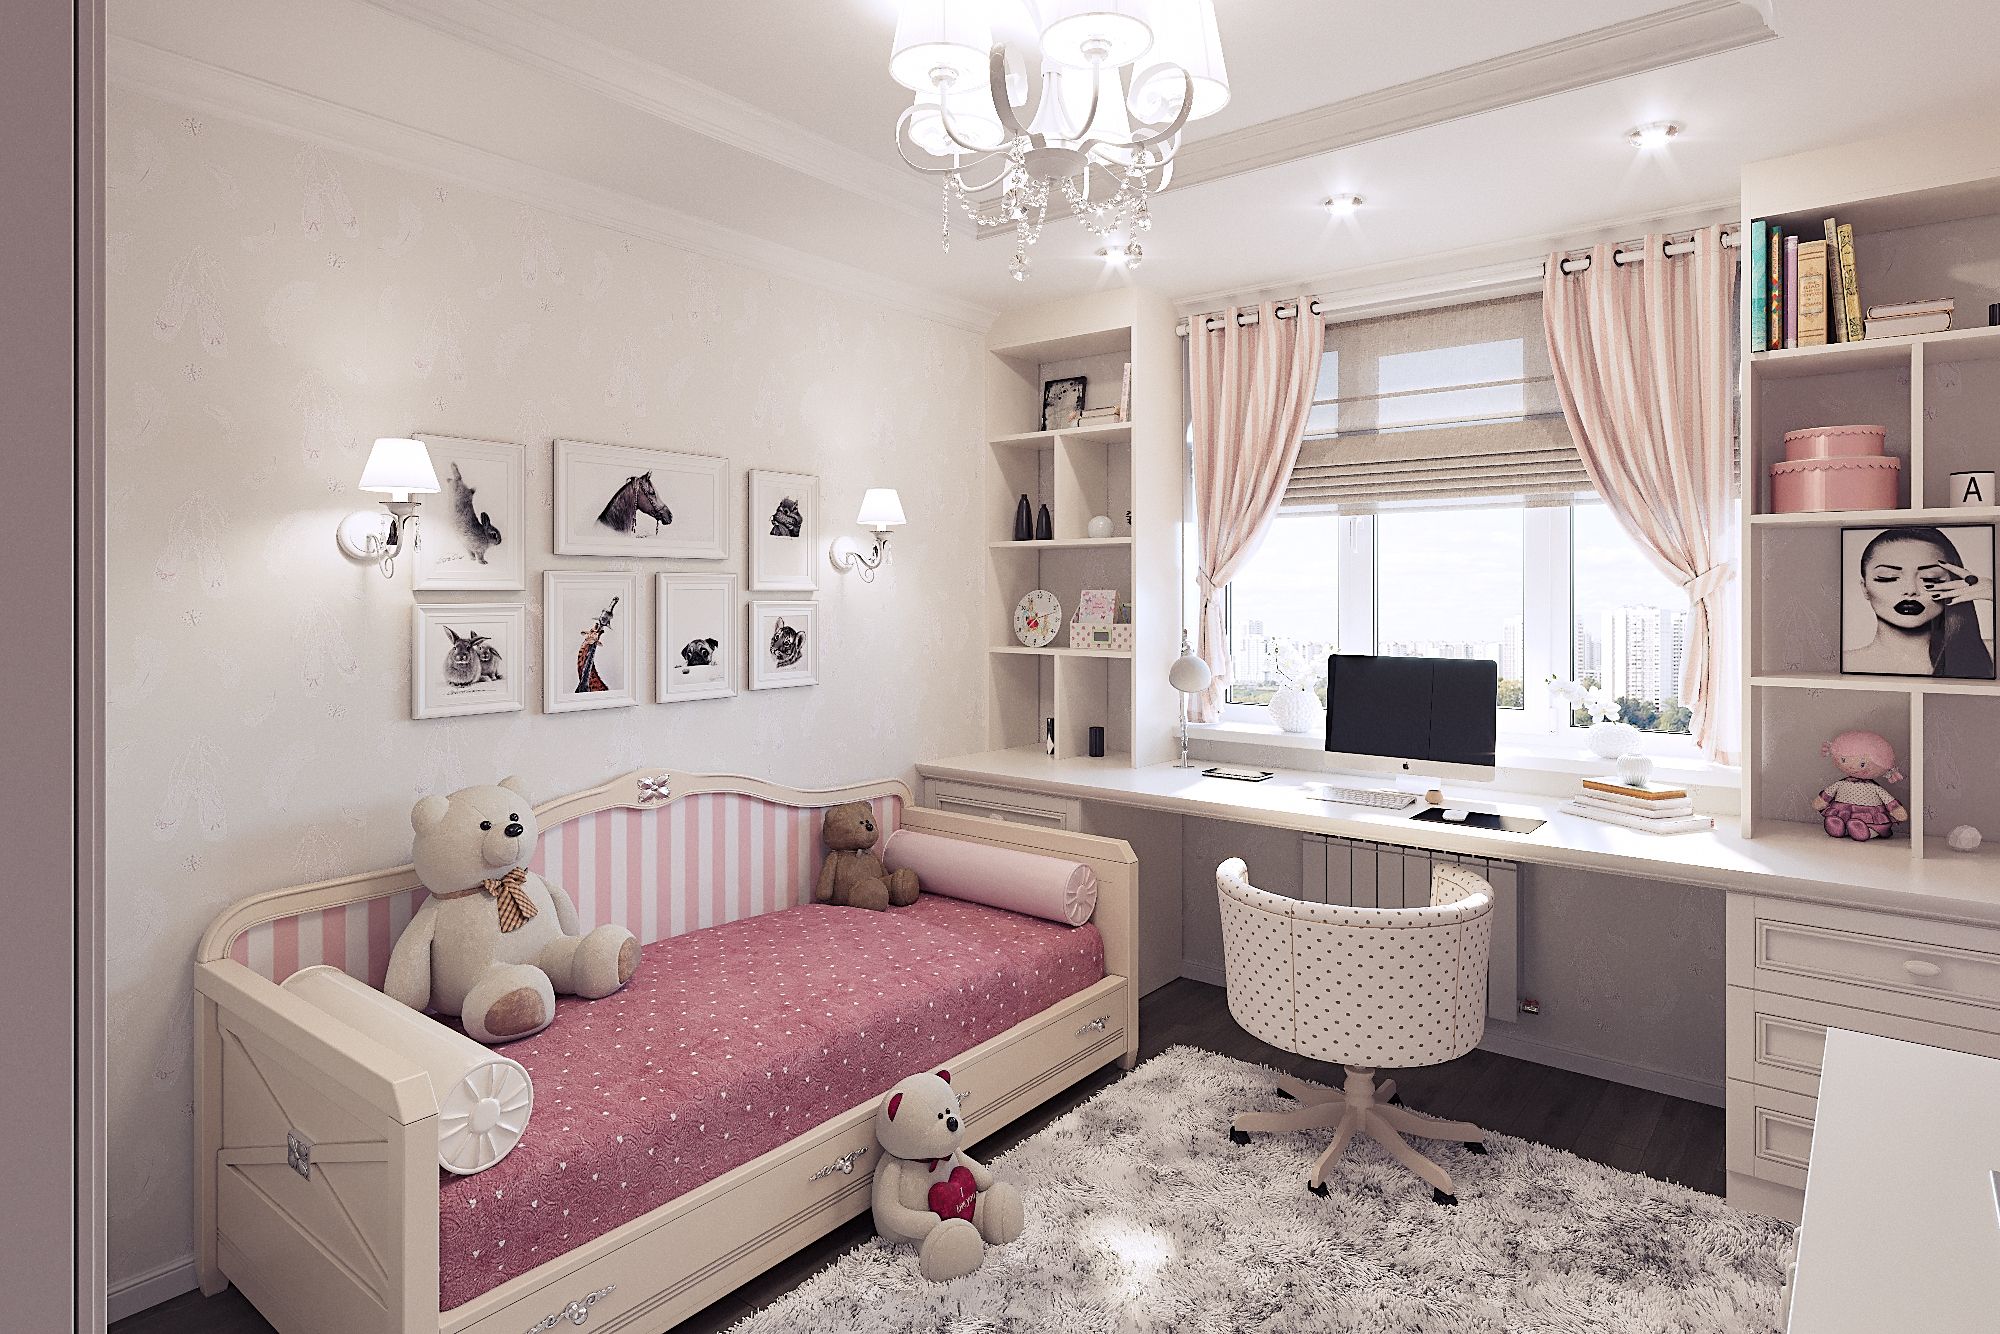 78 идей дизайна комнаты подростка — лучшие интерьеры на фото от ivd.ru